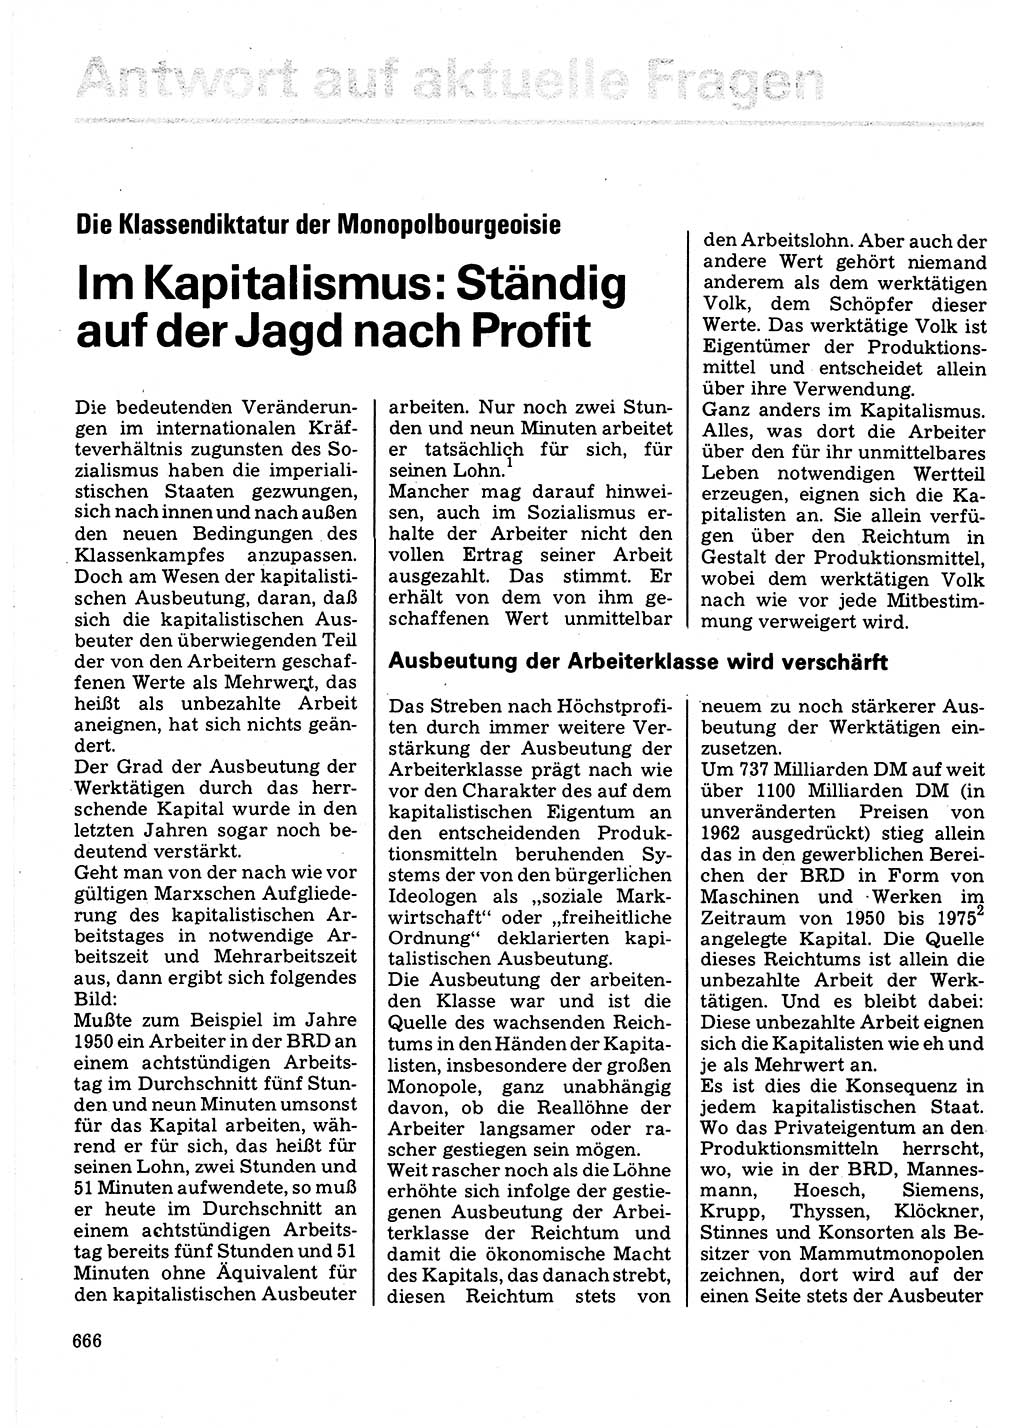 Neuer Weg (NW), Organ des Zentralkomitees (ZK) der SED (Sozialistische Einheitspartei Deutschlands) für Fragen des Parteilebens, 32. Jahrgang [Deutsche Demokratische Republik (DDR)] 1977, Seite 666 (NW ZK SED DDR 1977, S. 666)